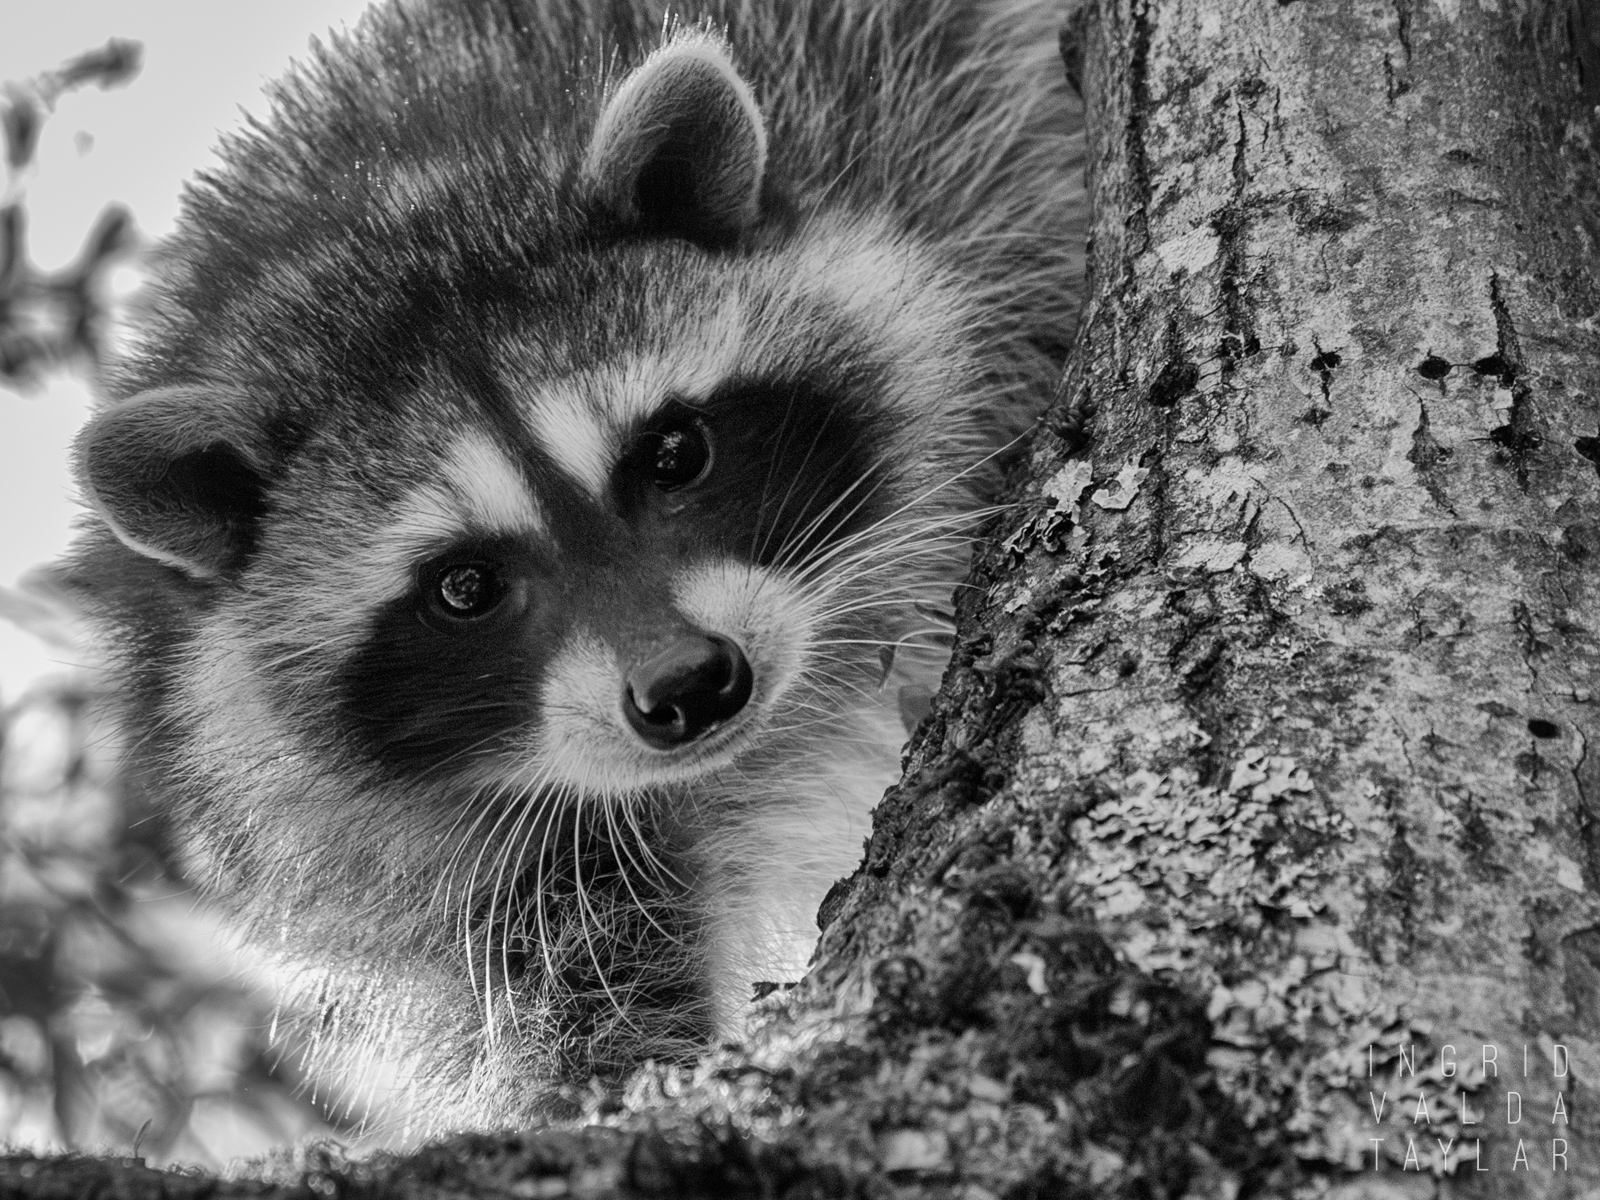 Raccoon in Tree in Seattle